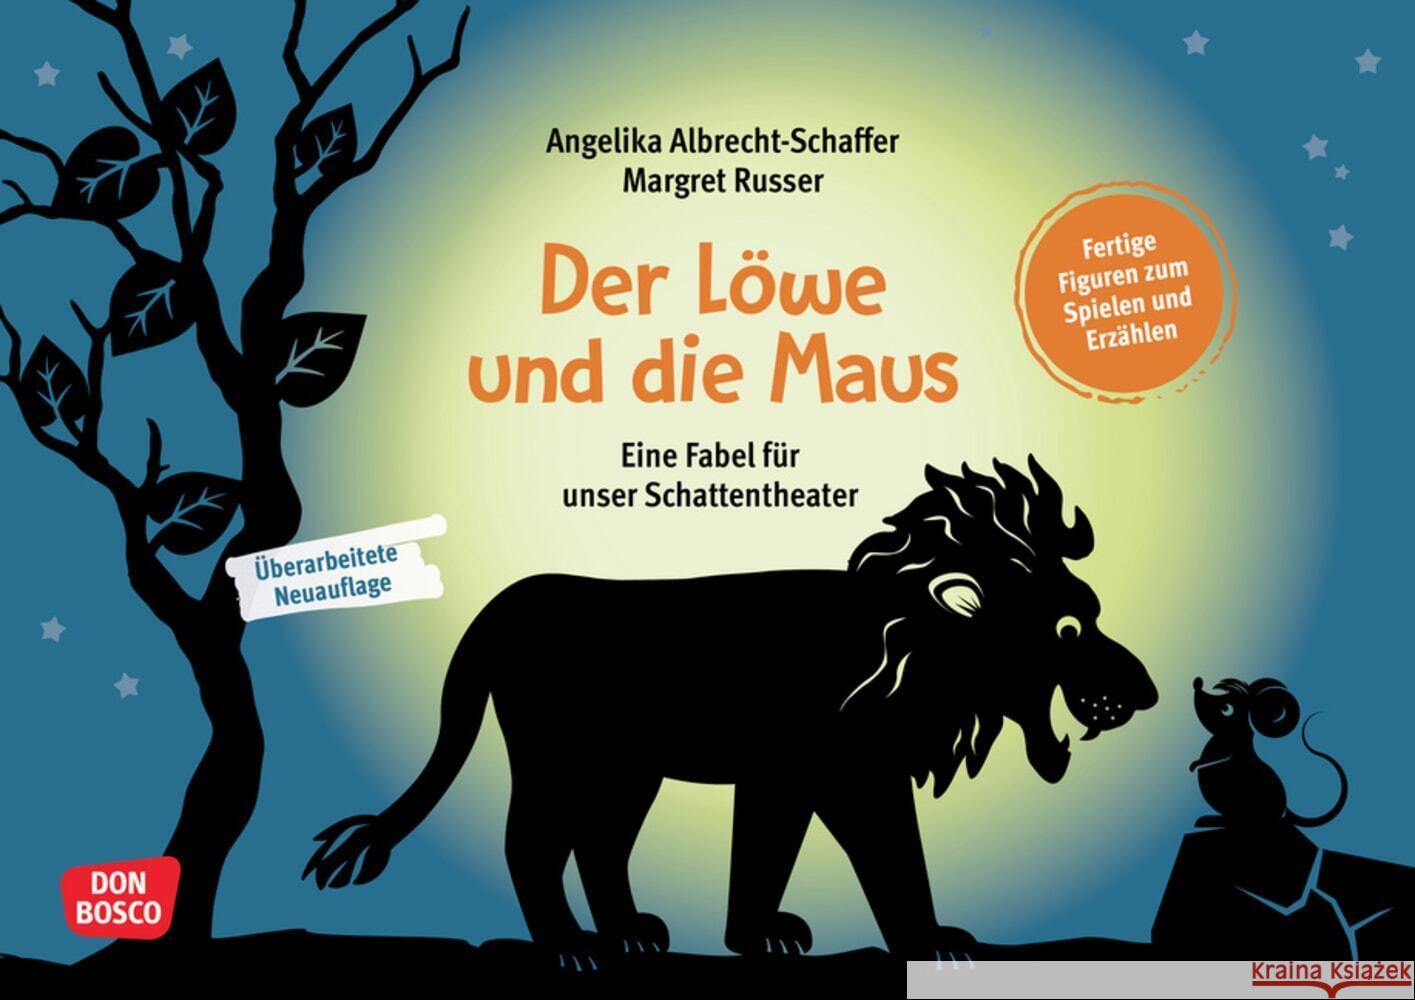 Der Löwe und die Maus, m. 1 Beilage Albrecht-Schaffer, Angelika, Aesop 4260694920053